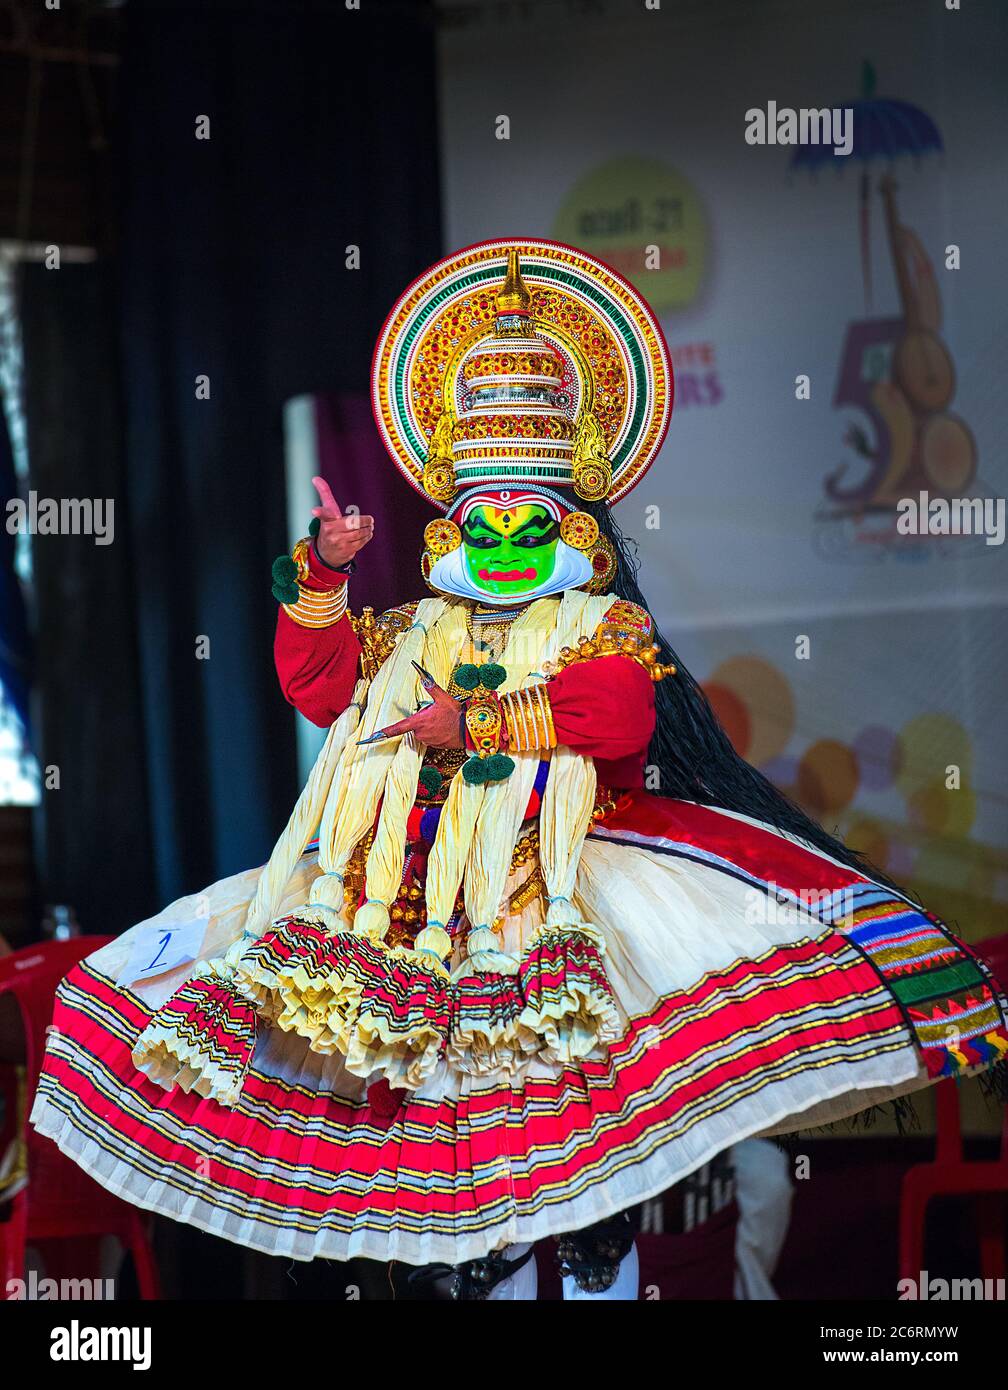 Tänzer in traditionellen Kostümen führen den südindischen Tanz/Drama von Kathakali in Kerala, Indien auf. Kerala Stockfoto